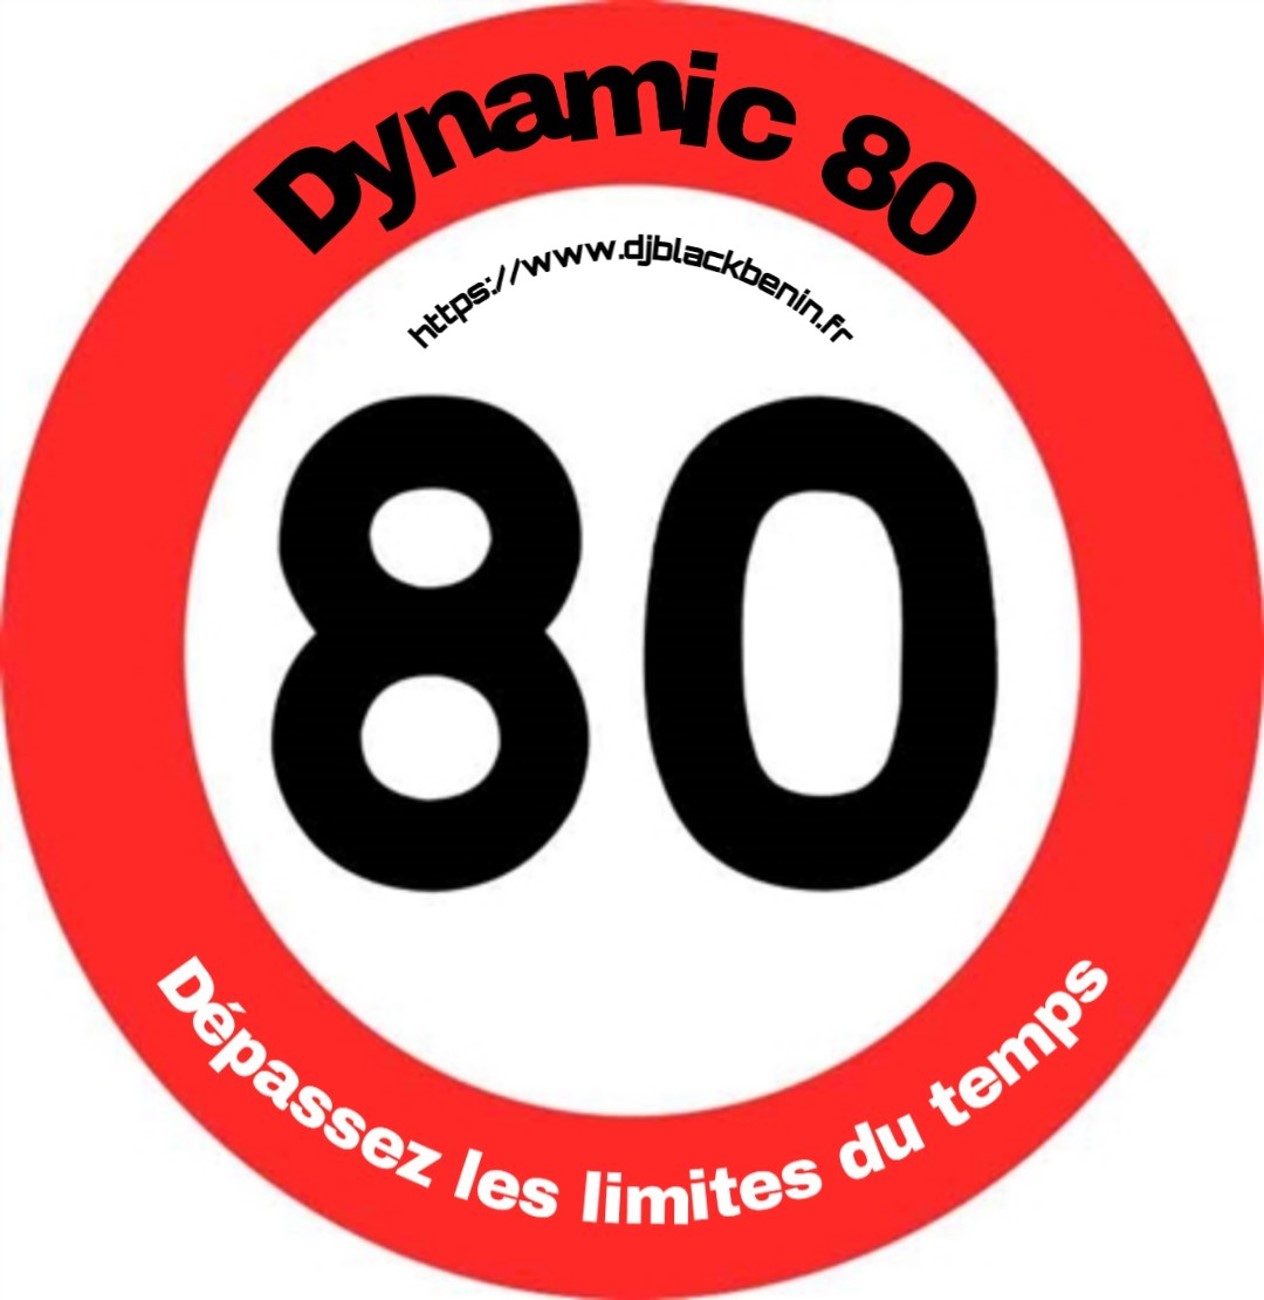 Dynamic 80 : pour continuer à faire la fête... à la rentrée 